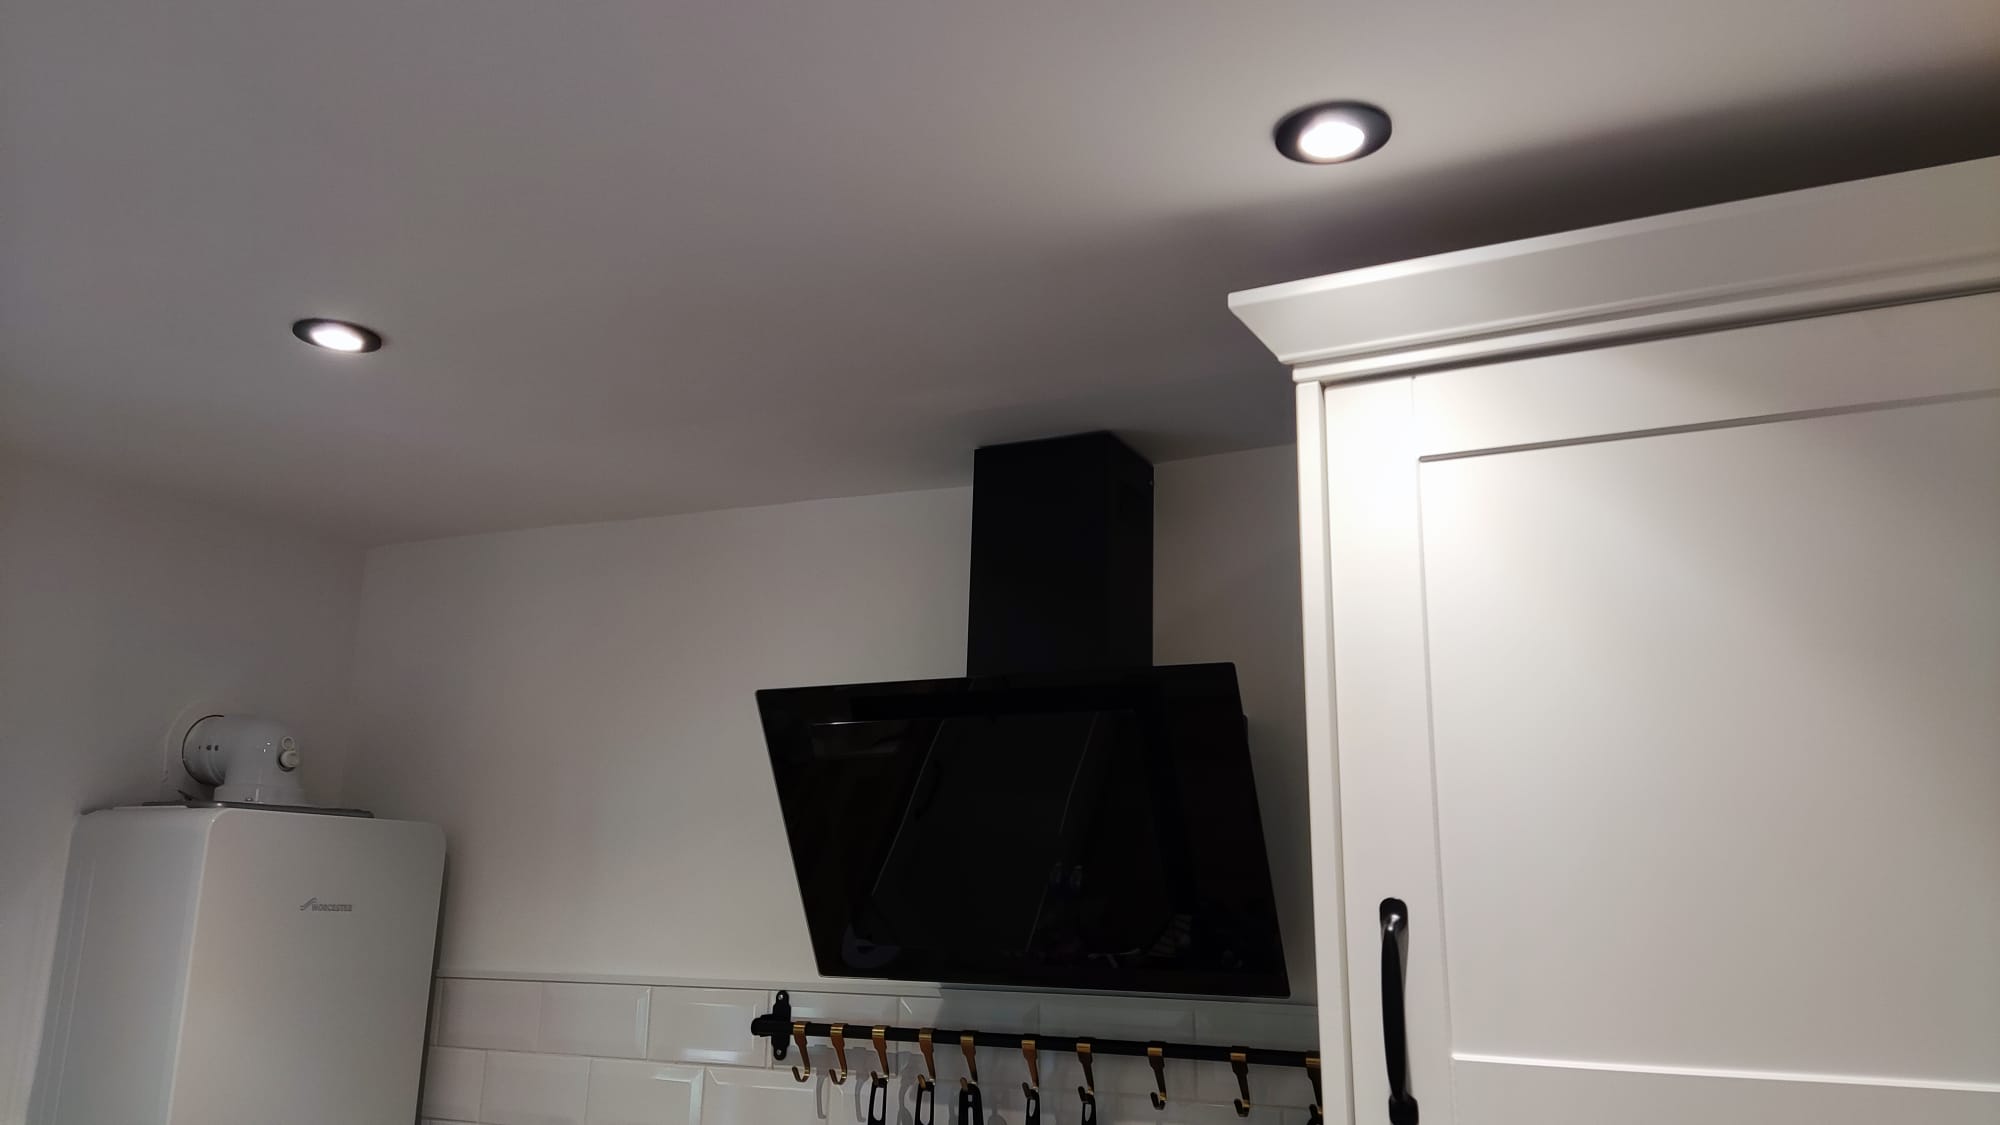 Solid Electrics: Indoor lighting upgrades